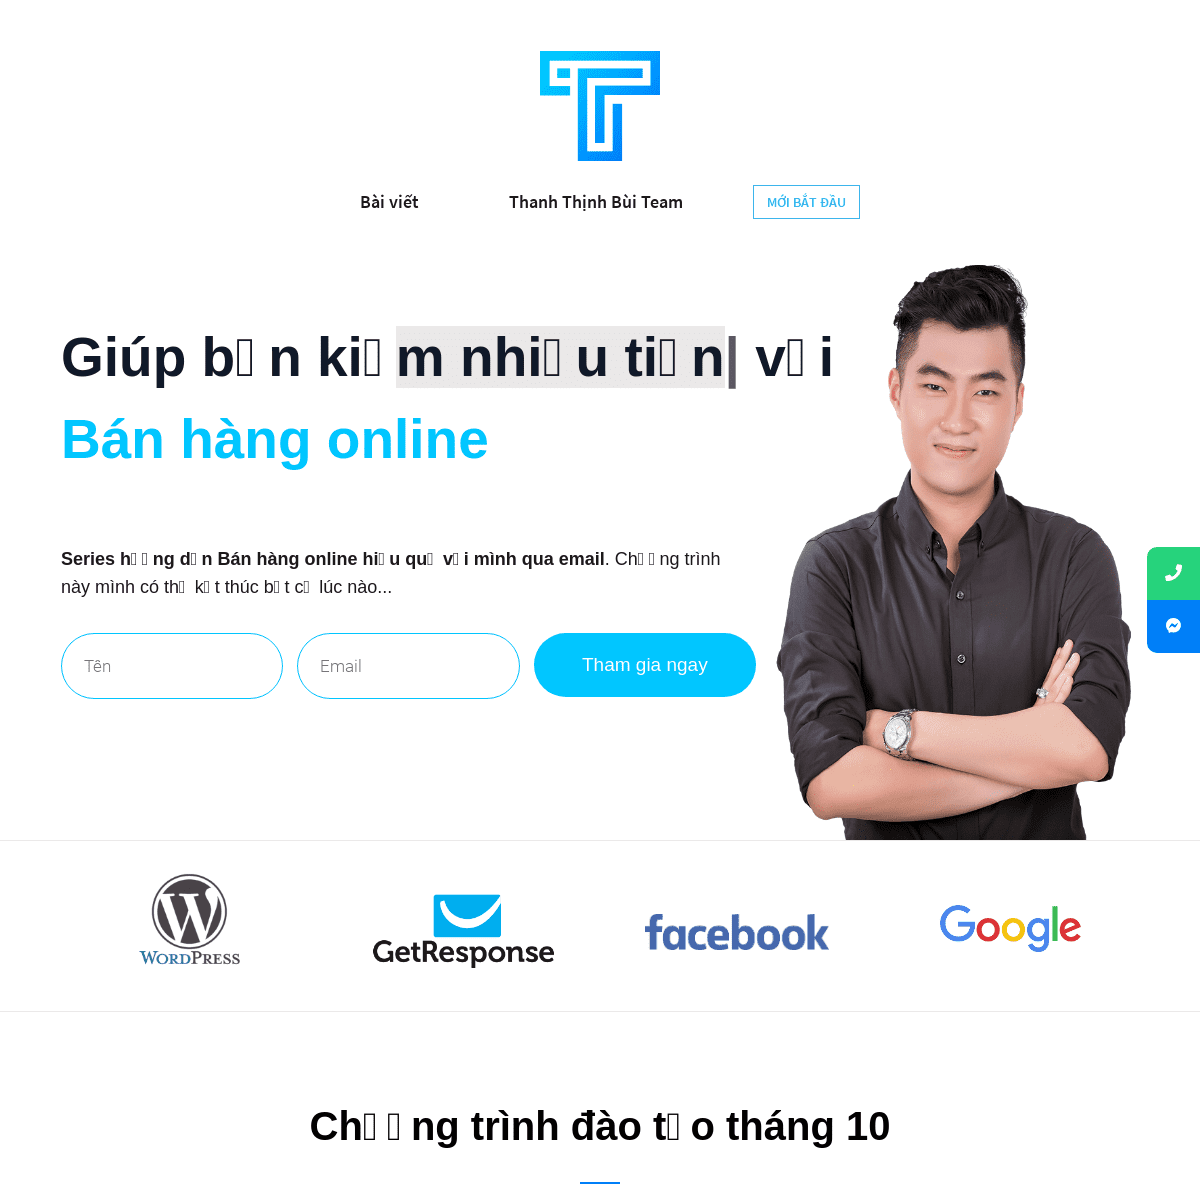 Thanh Thịnh Bùi - Giúp bạn thành công với Bán hàng online